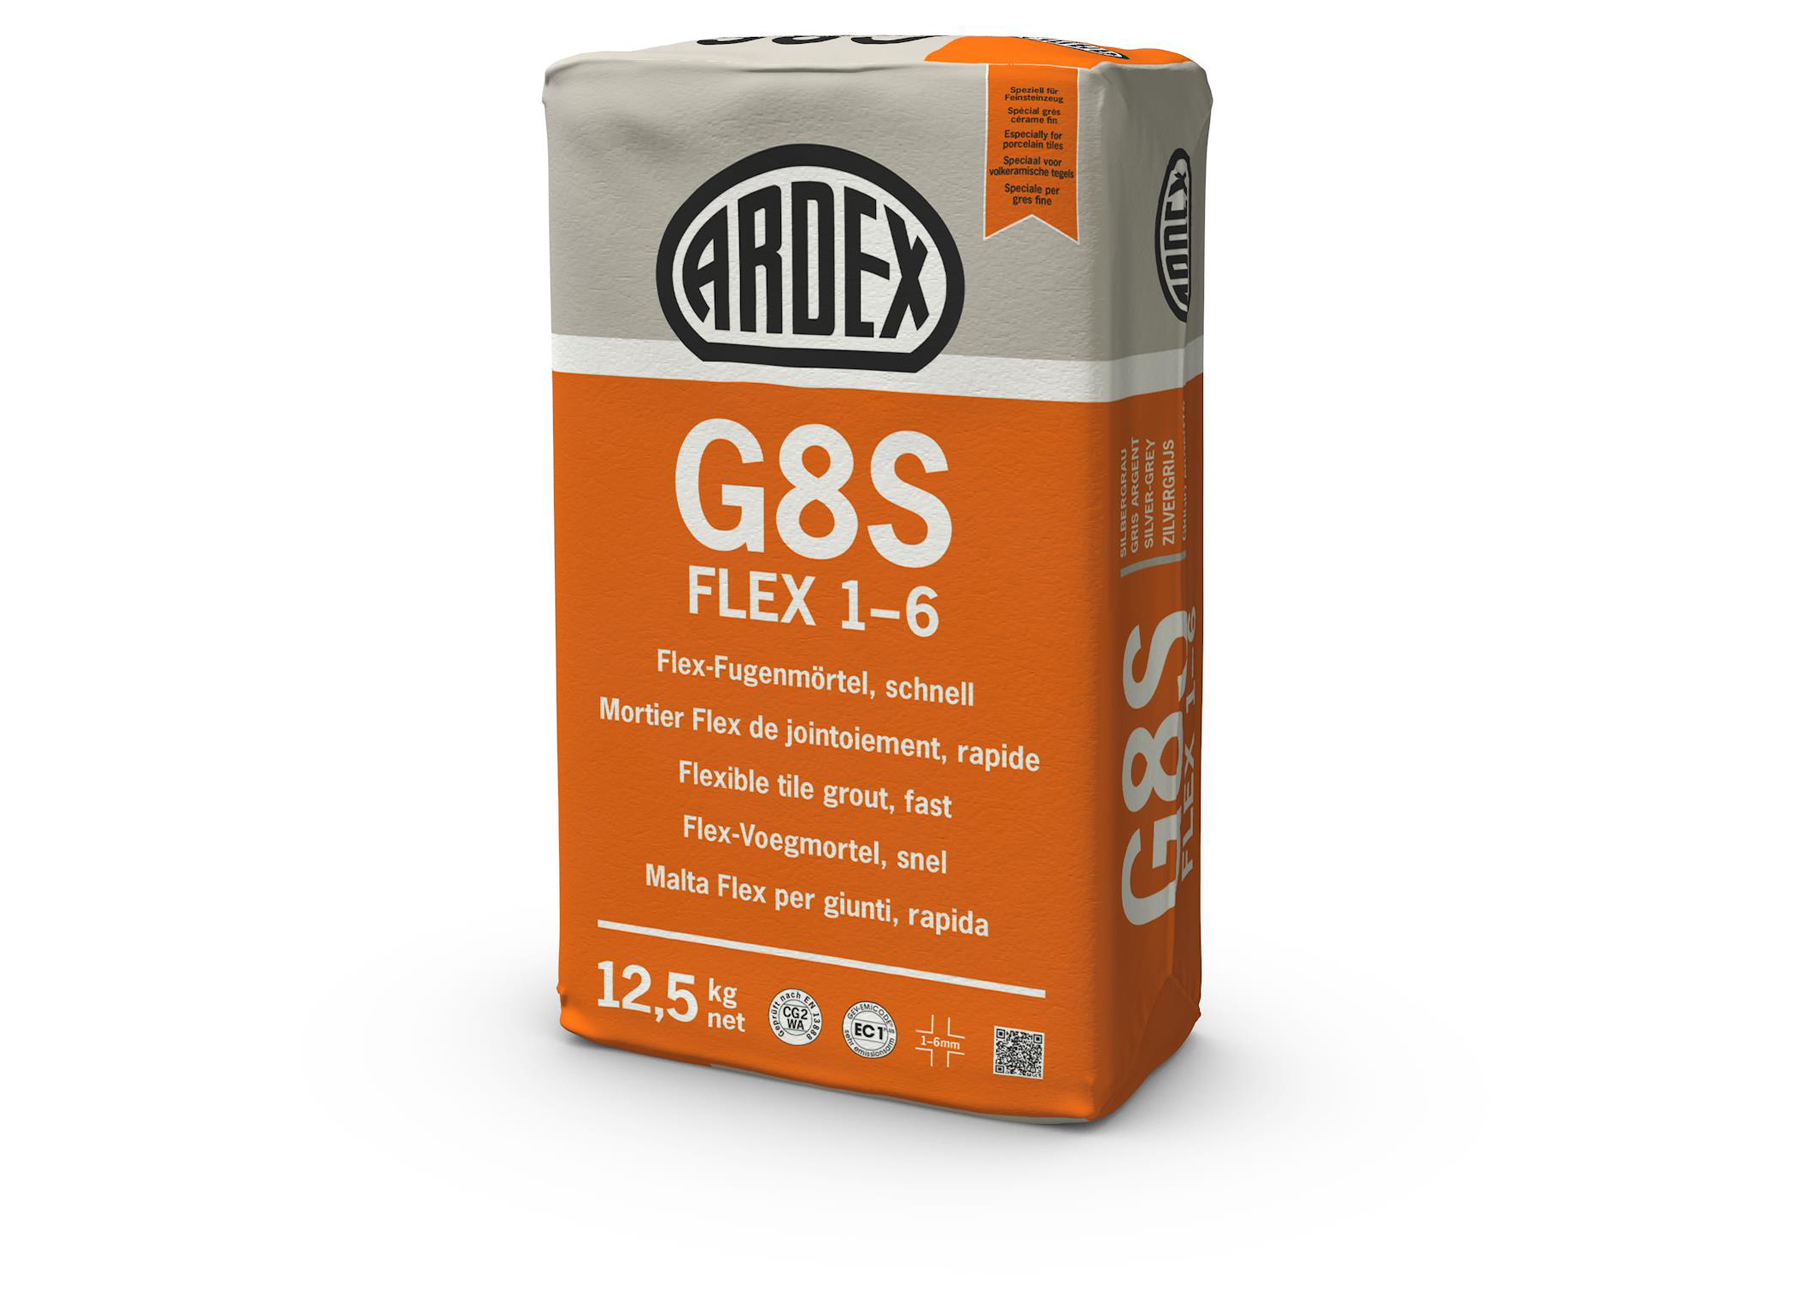 G8S FLEX 1-6 ZILVERGRIJS 5KG